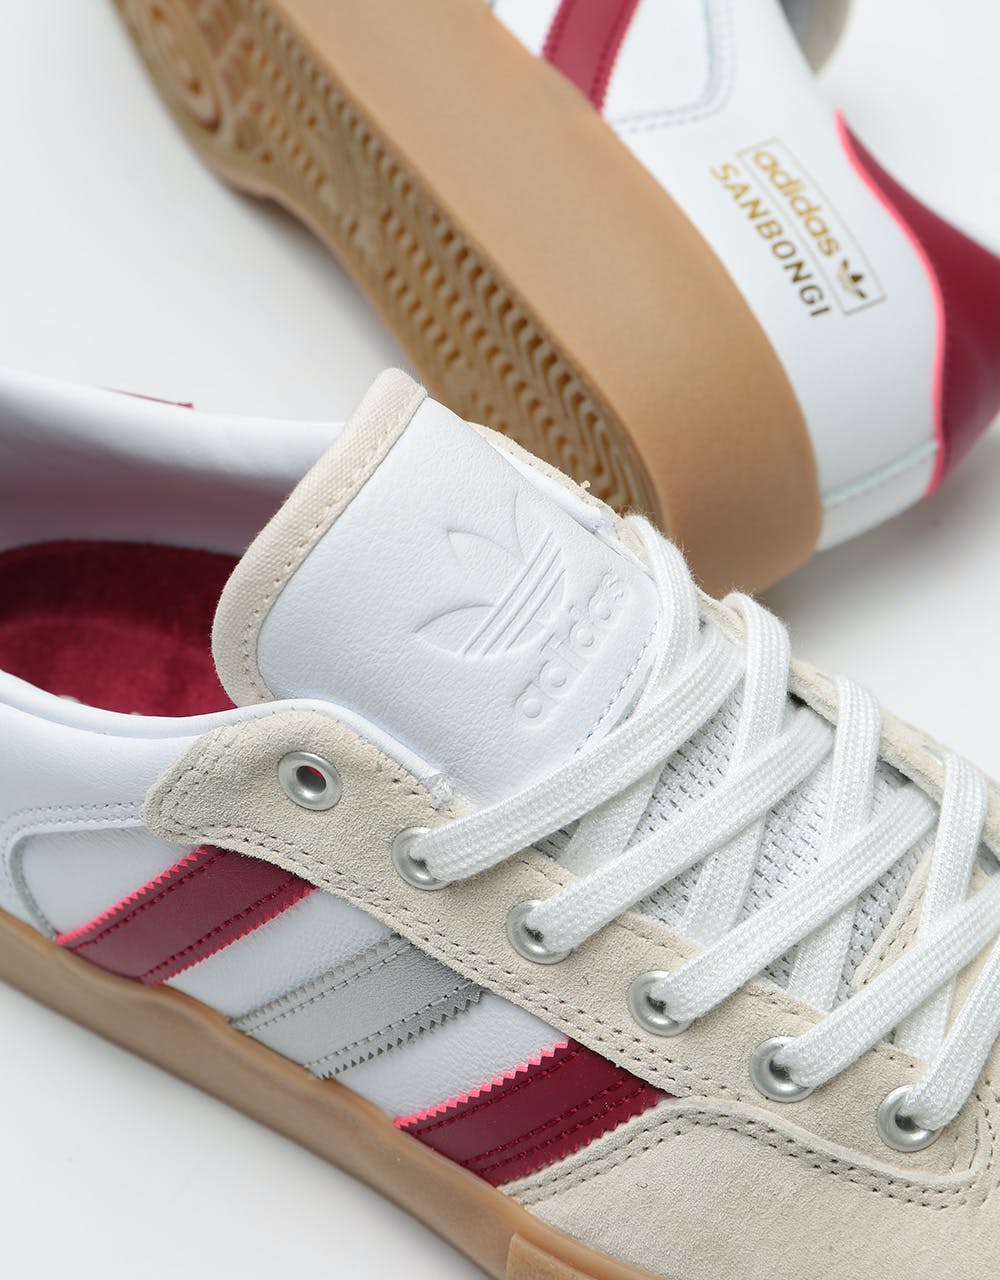 Adidas x Shin Sanbongi Matchreak Super Skate Shoes - White/Collegiate